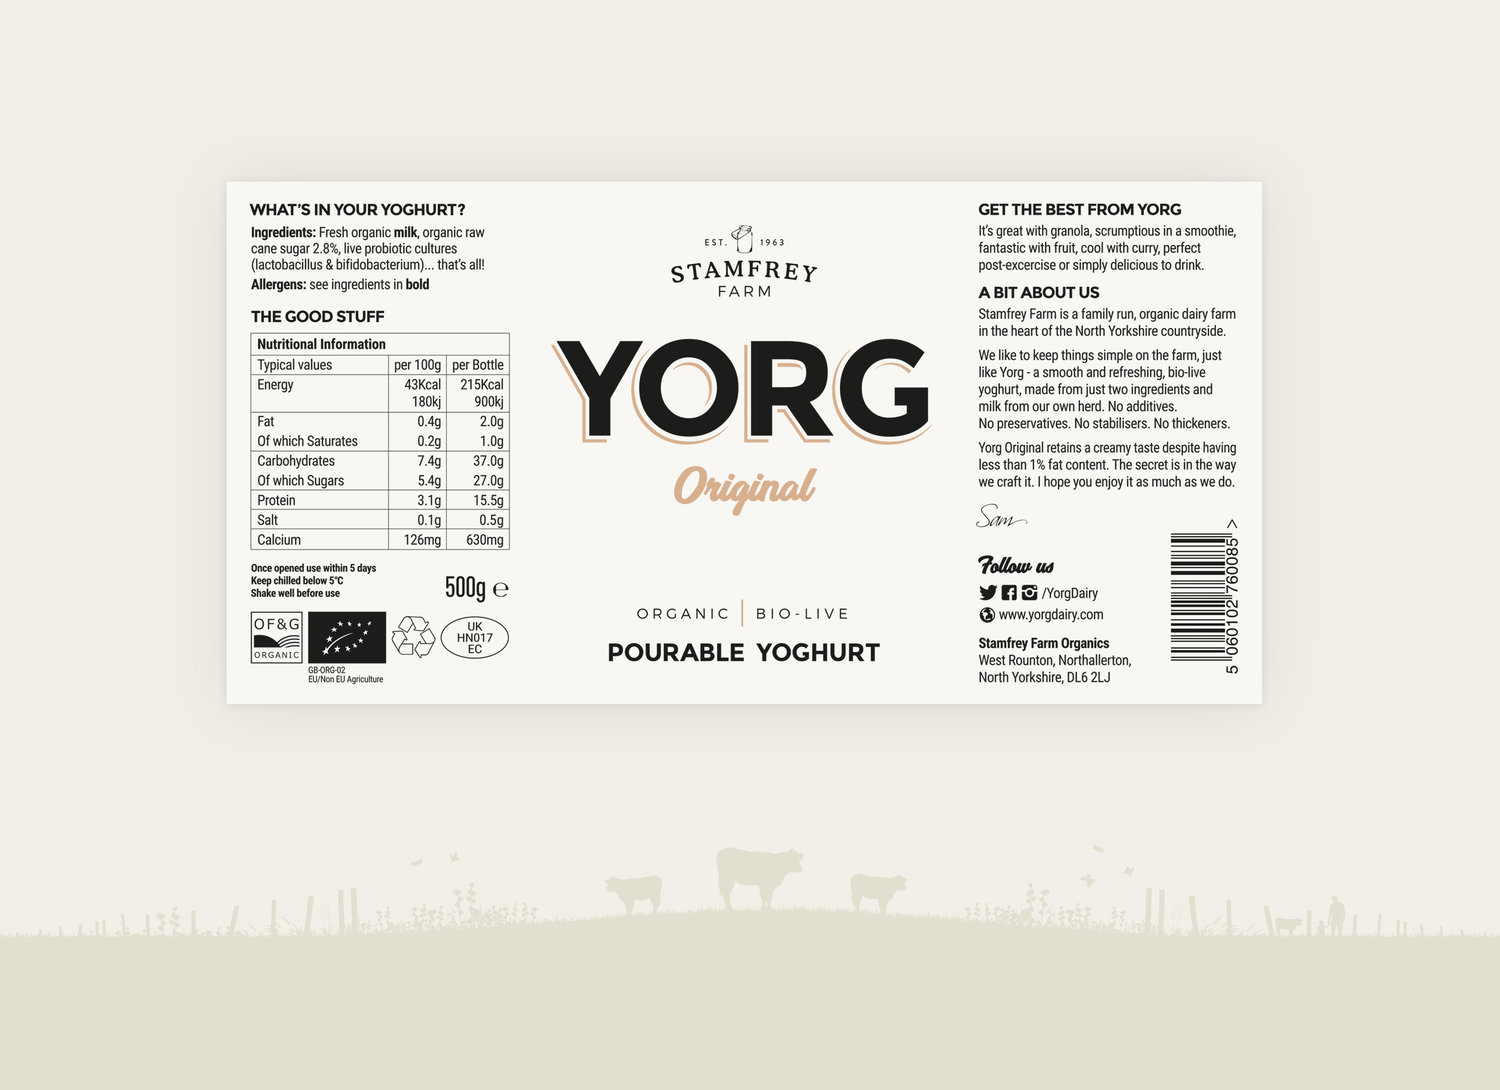 Yorg酸奶产品的品牌和包装设计(图2)